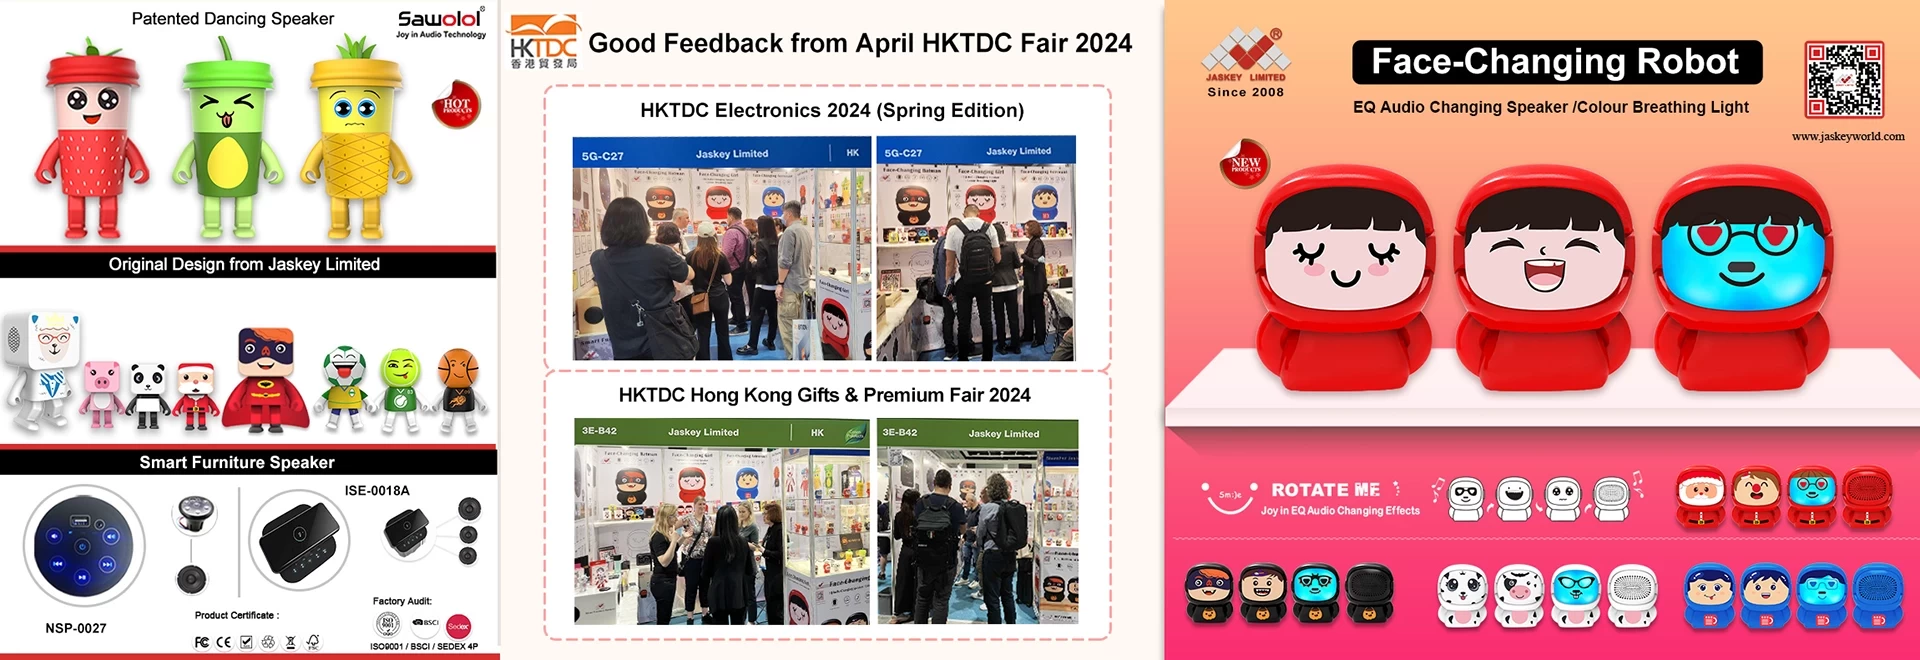 HKTDC Electronics 2024 (Spring Edition) および Gifts & Premium Fair からの良いフィードバック